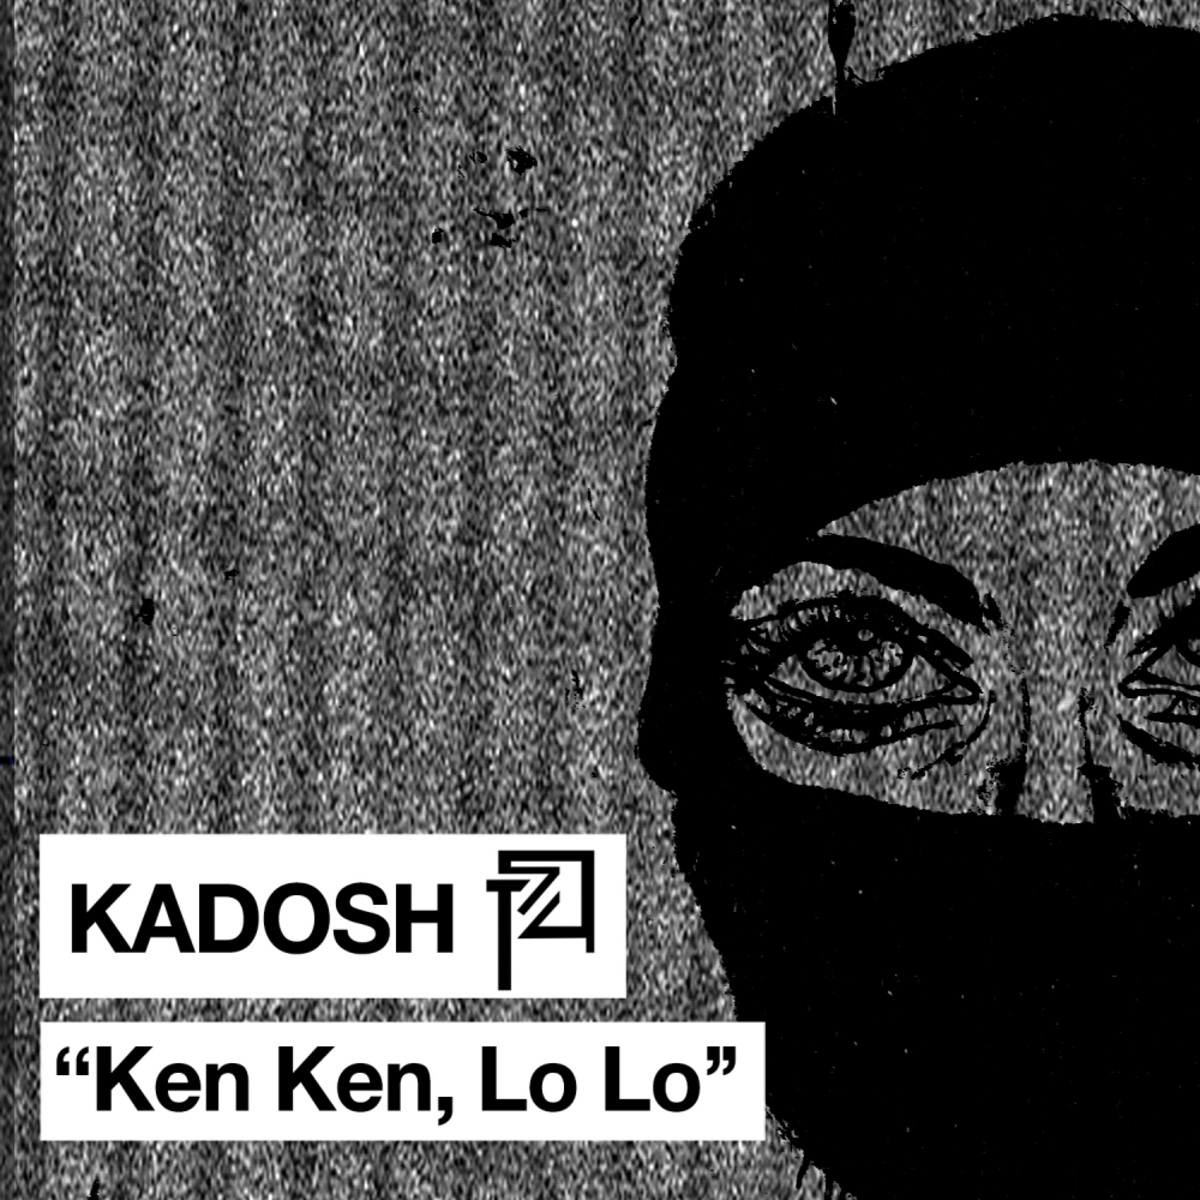 00 752668425330653 Kadosh - Ken Ken, Lo Lo / Plant 74 Records